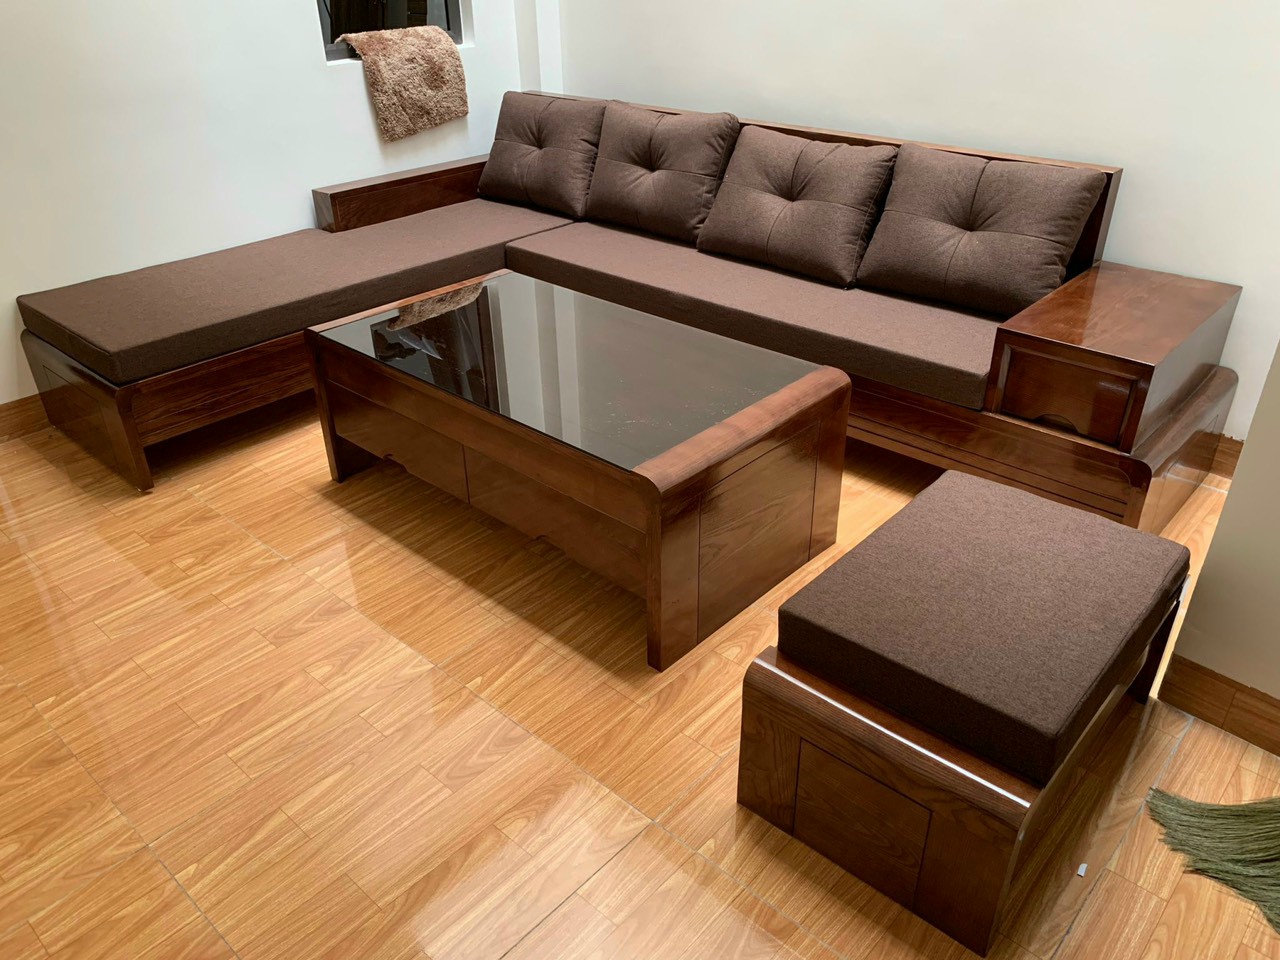 Mẫu bàn ghế gỗ thiết kế nhỏ gọn, đơn giản phù hợp phòng khách nhỏ và vừa